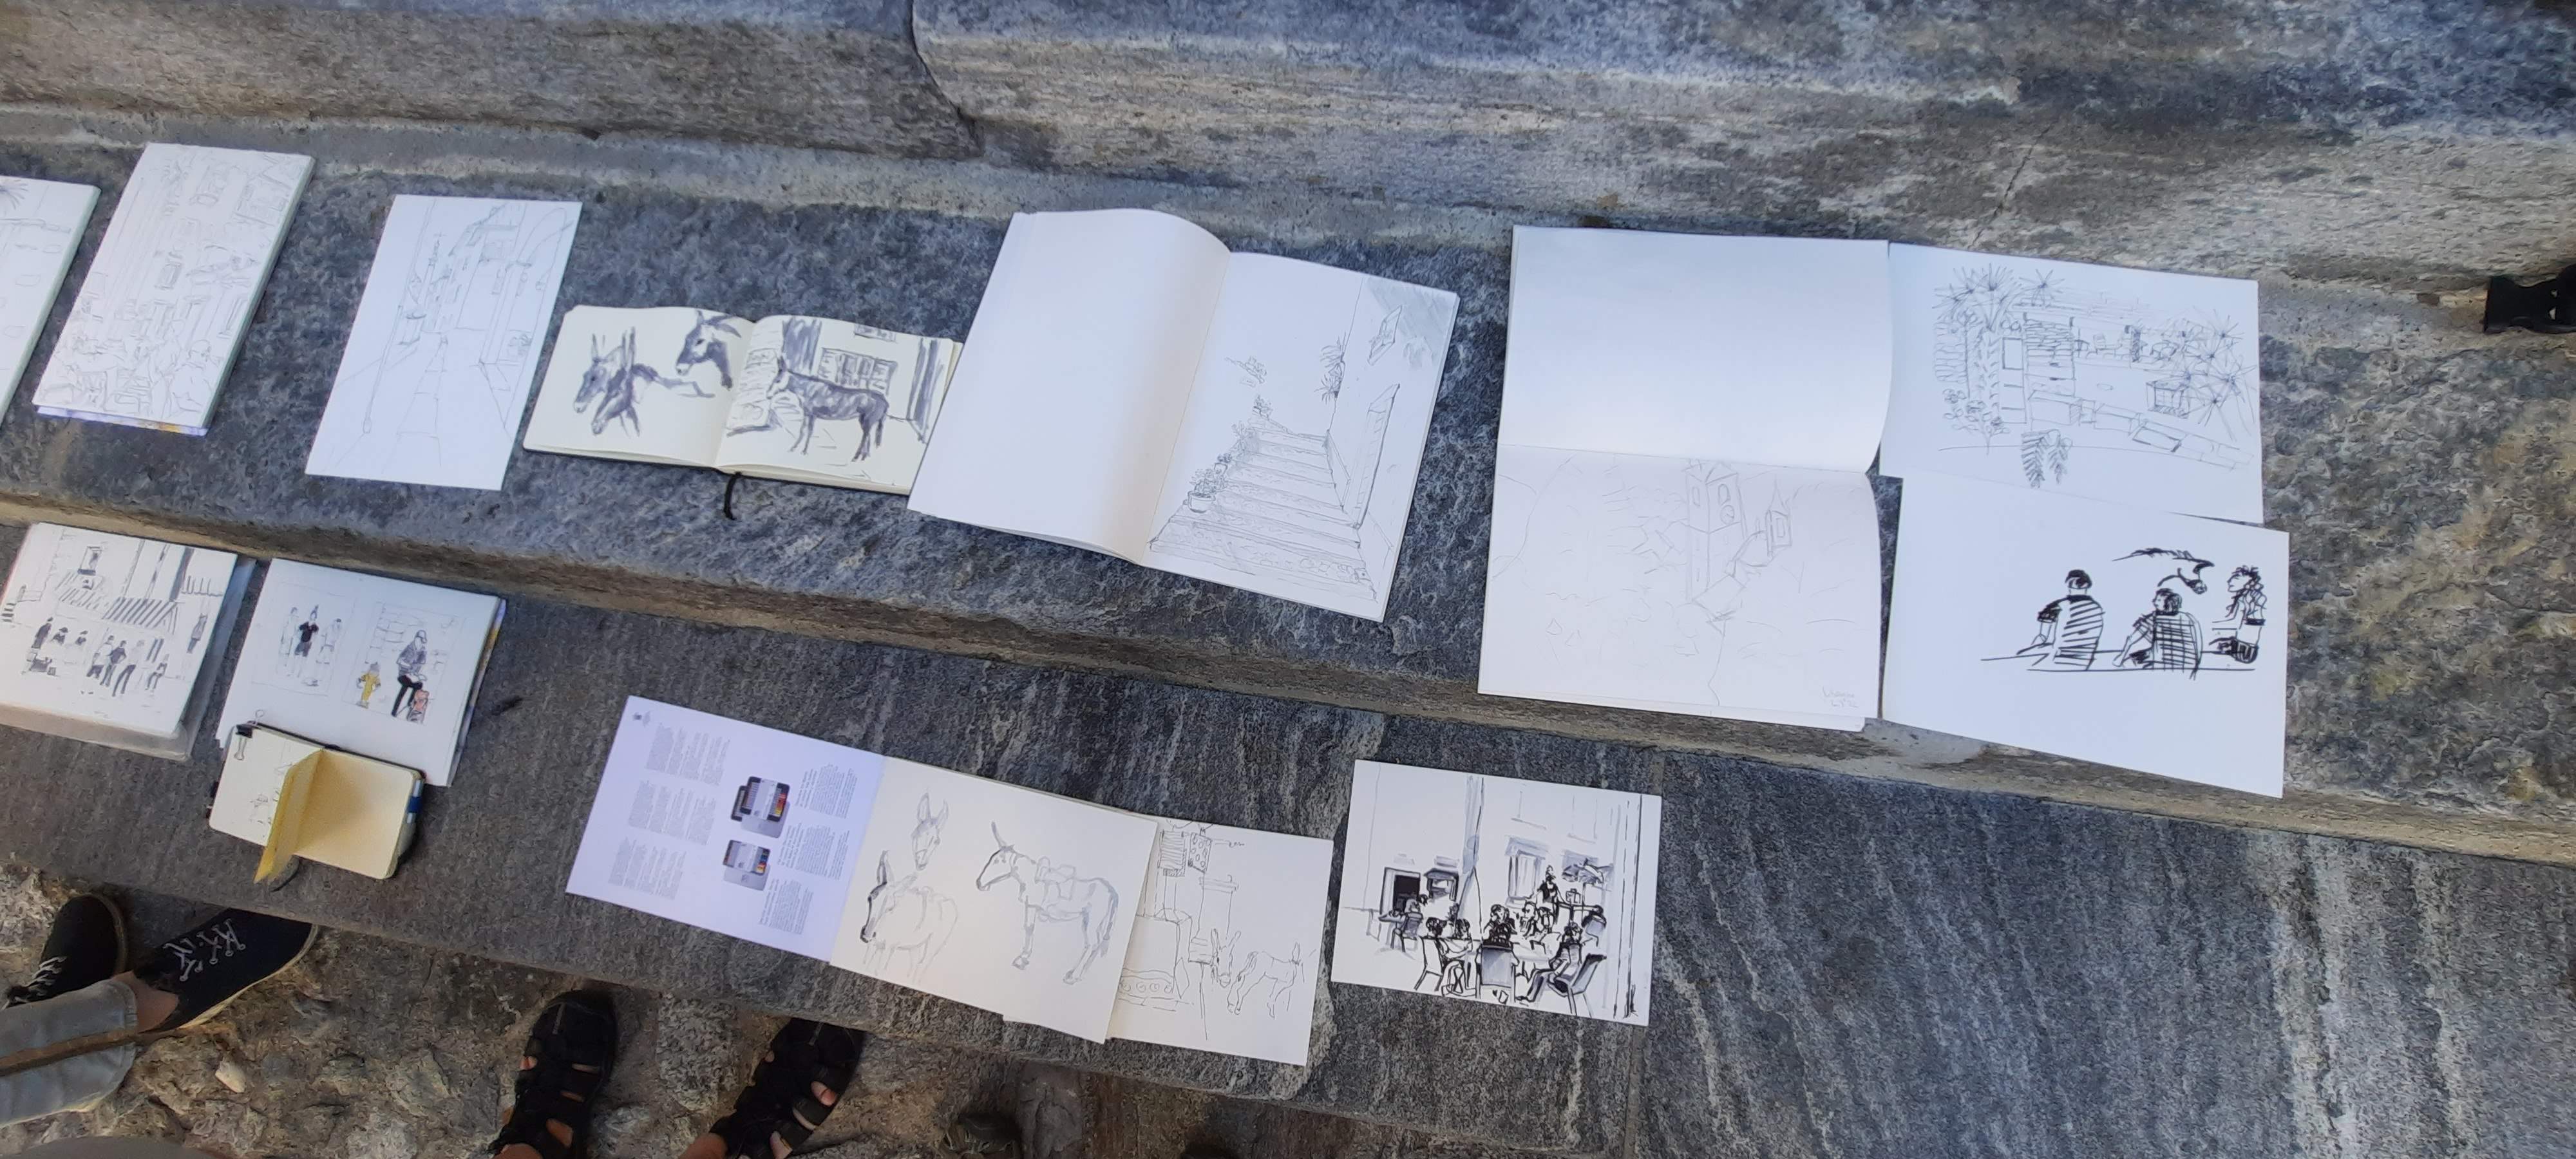 Sketchcrawl Piazza Intragna